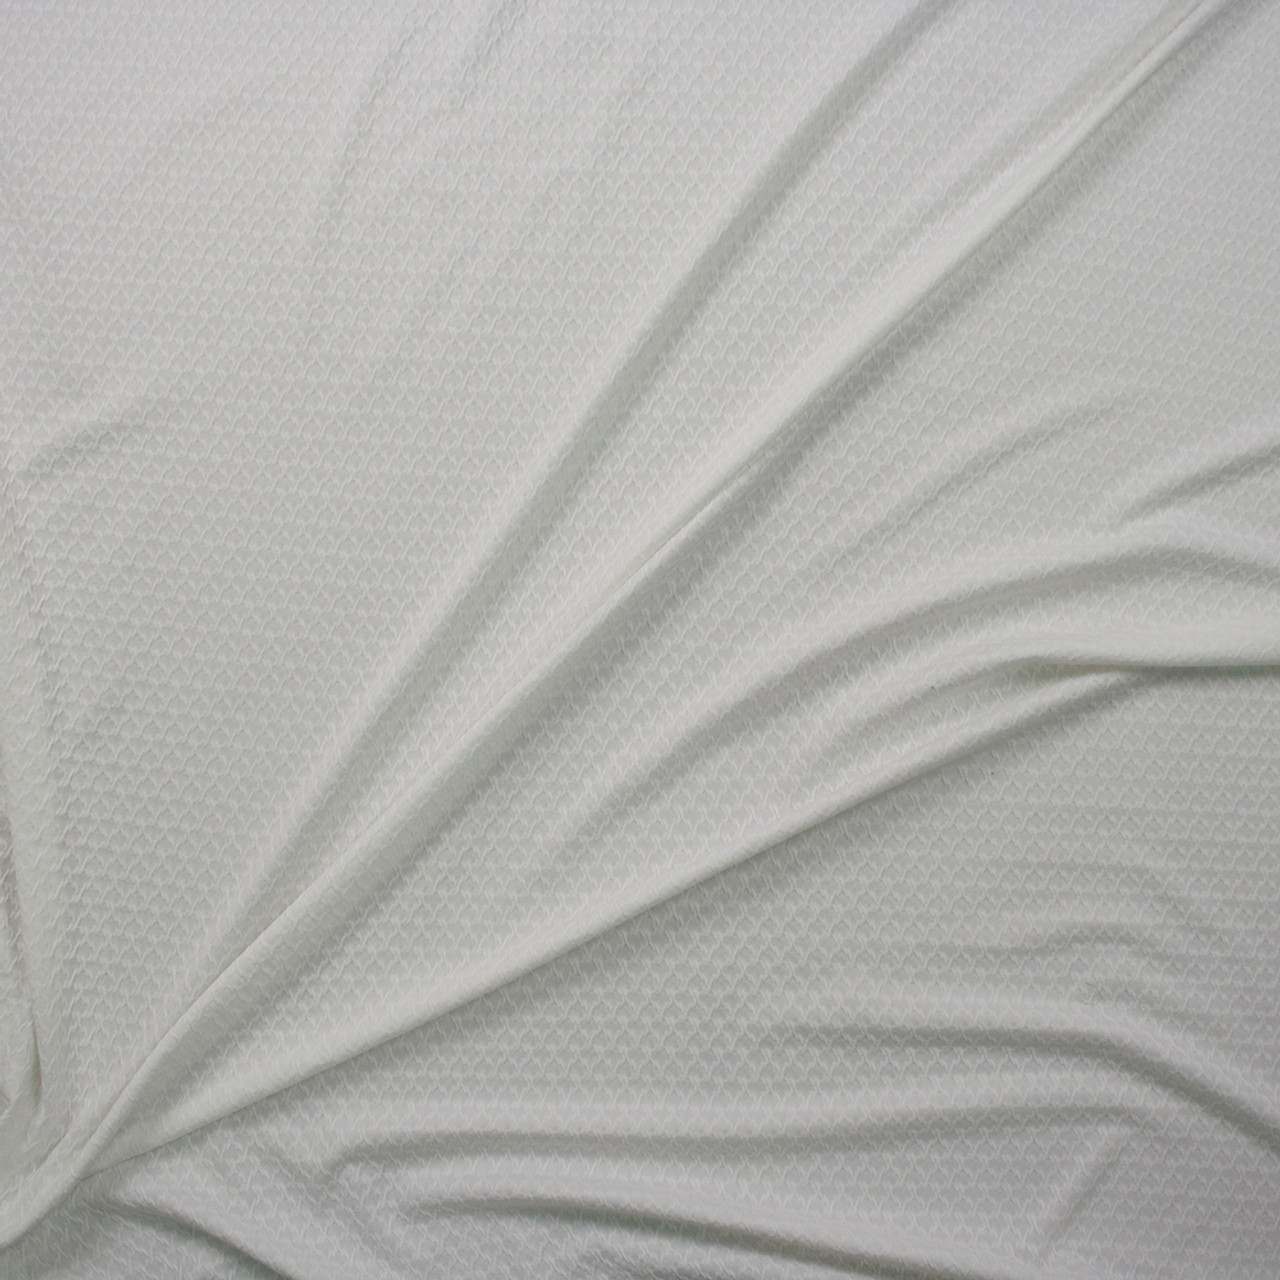 Cotton Jersey Lycra Spandex knit Stretch Fabric 58/60 wide (Burgundy)